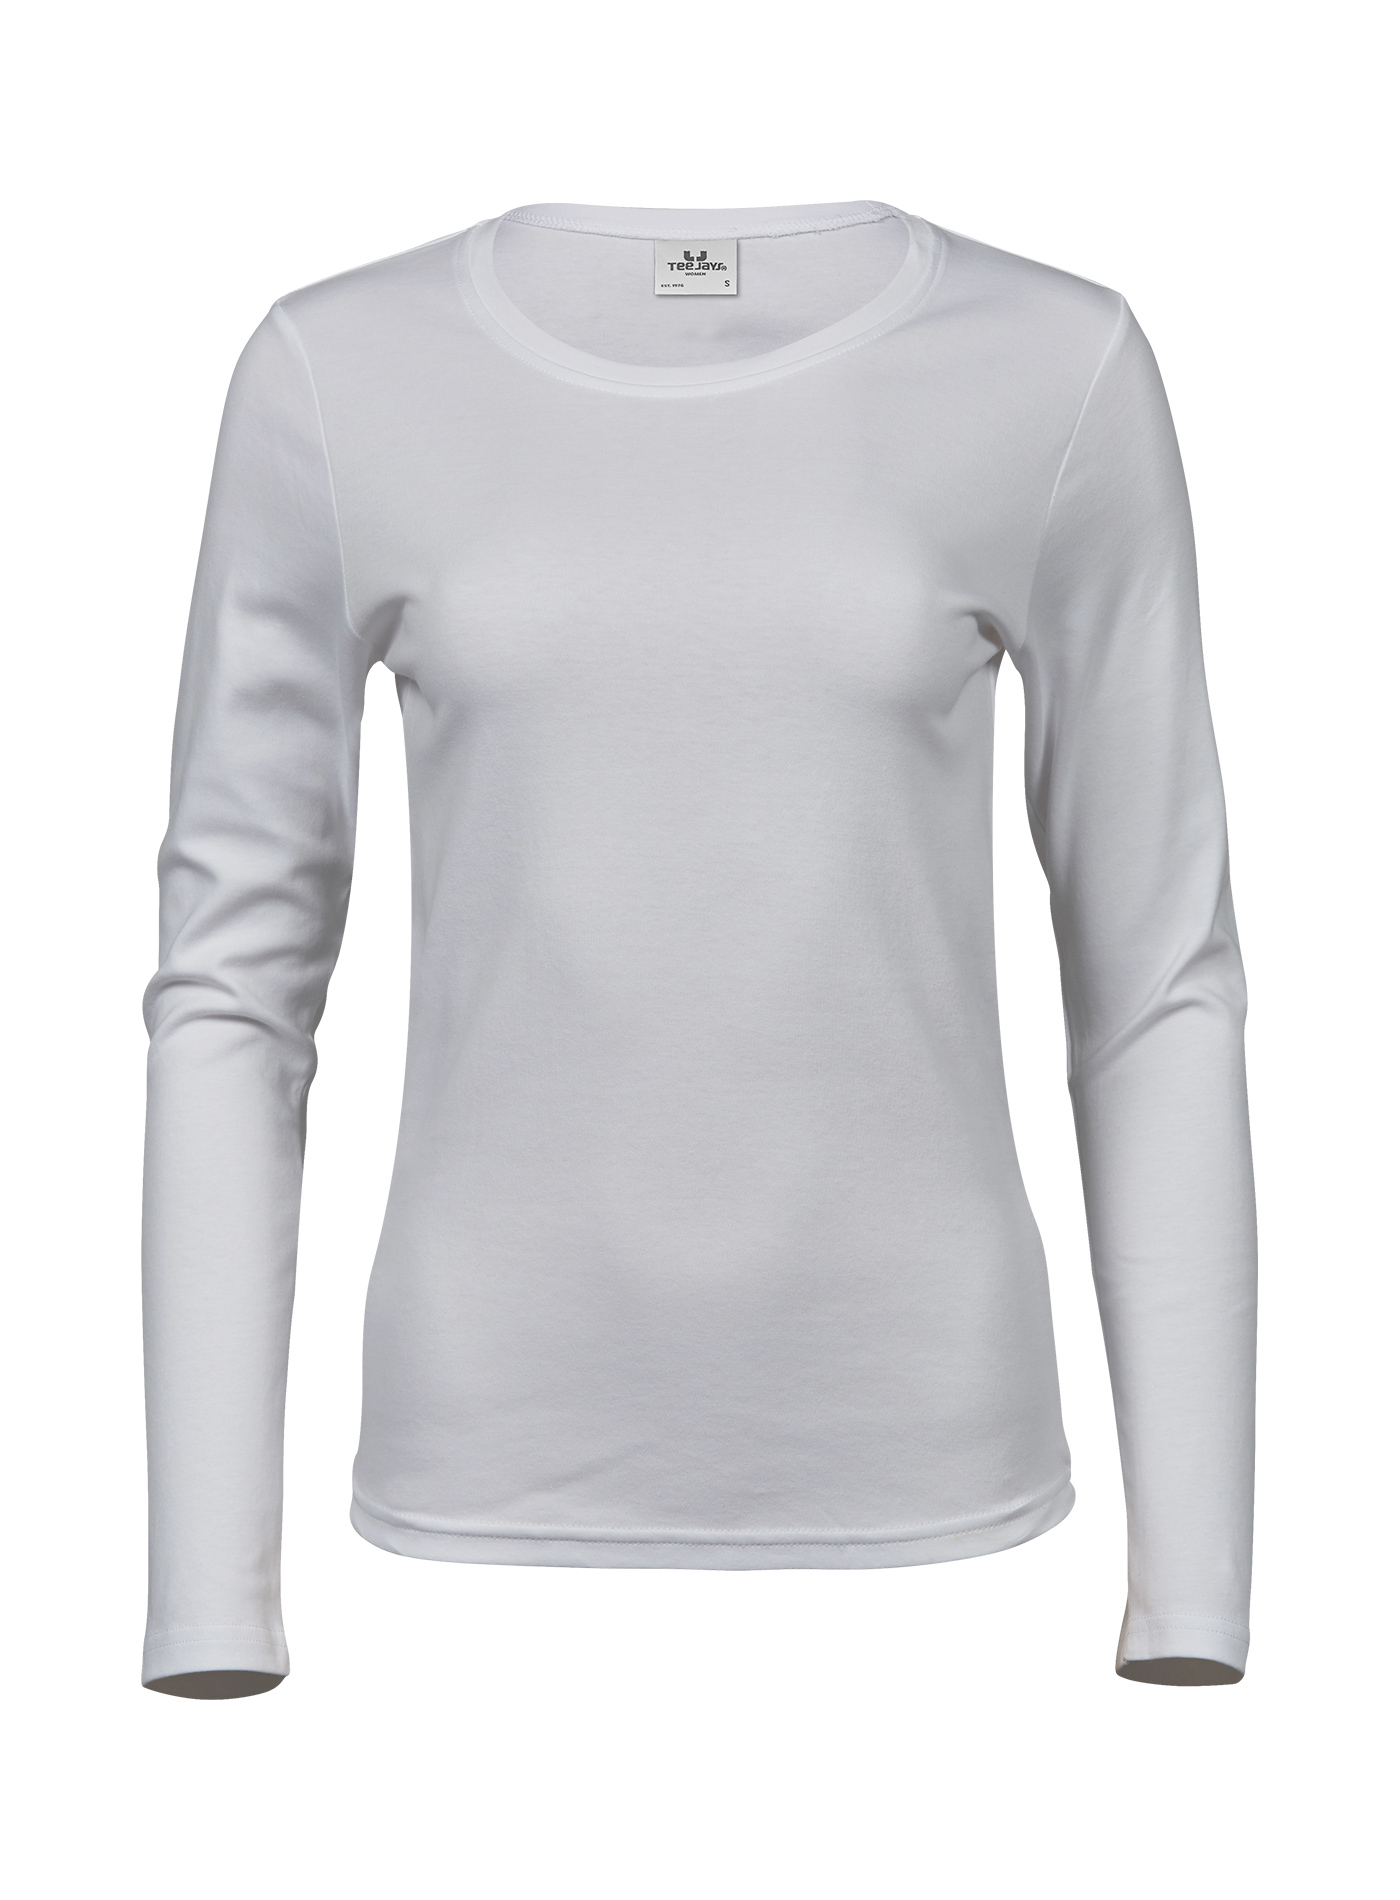 Dámské tričko s dlouhými rukávy Tee Jays Interlock - Bílá 3XL